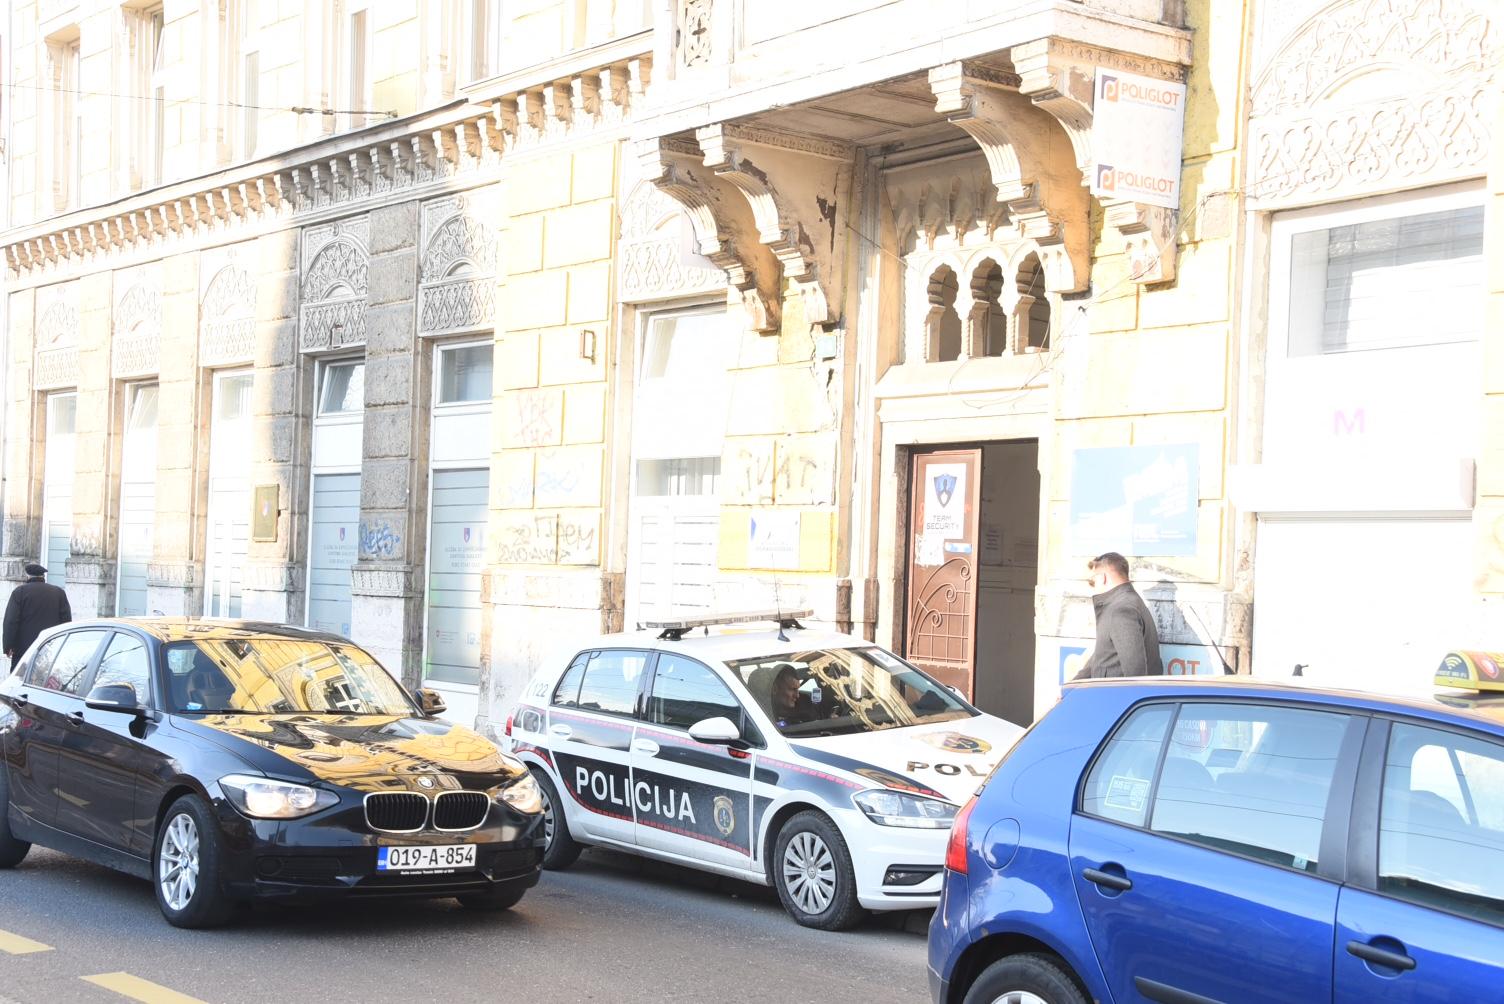 Policija ispred muzeja u Sarajevu - Avaz